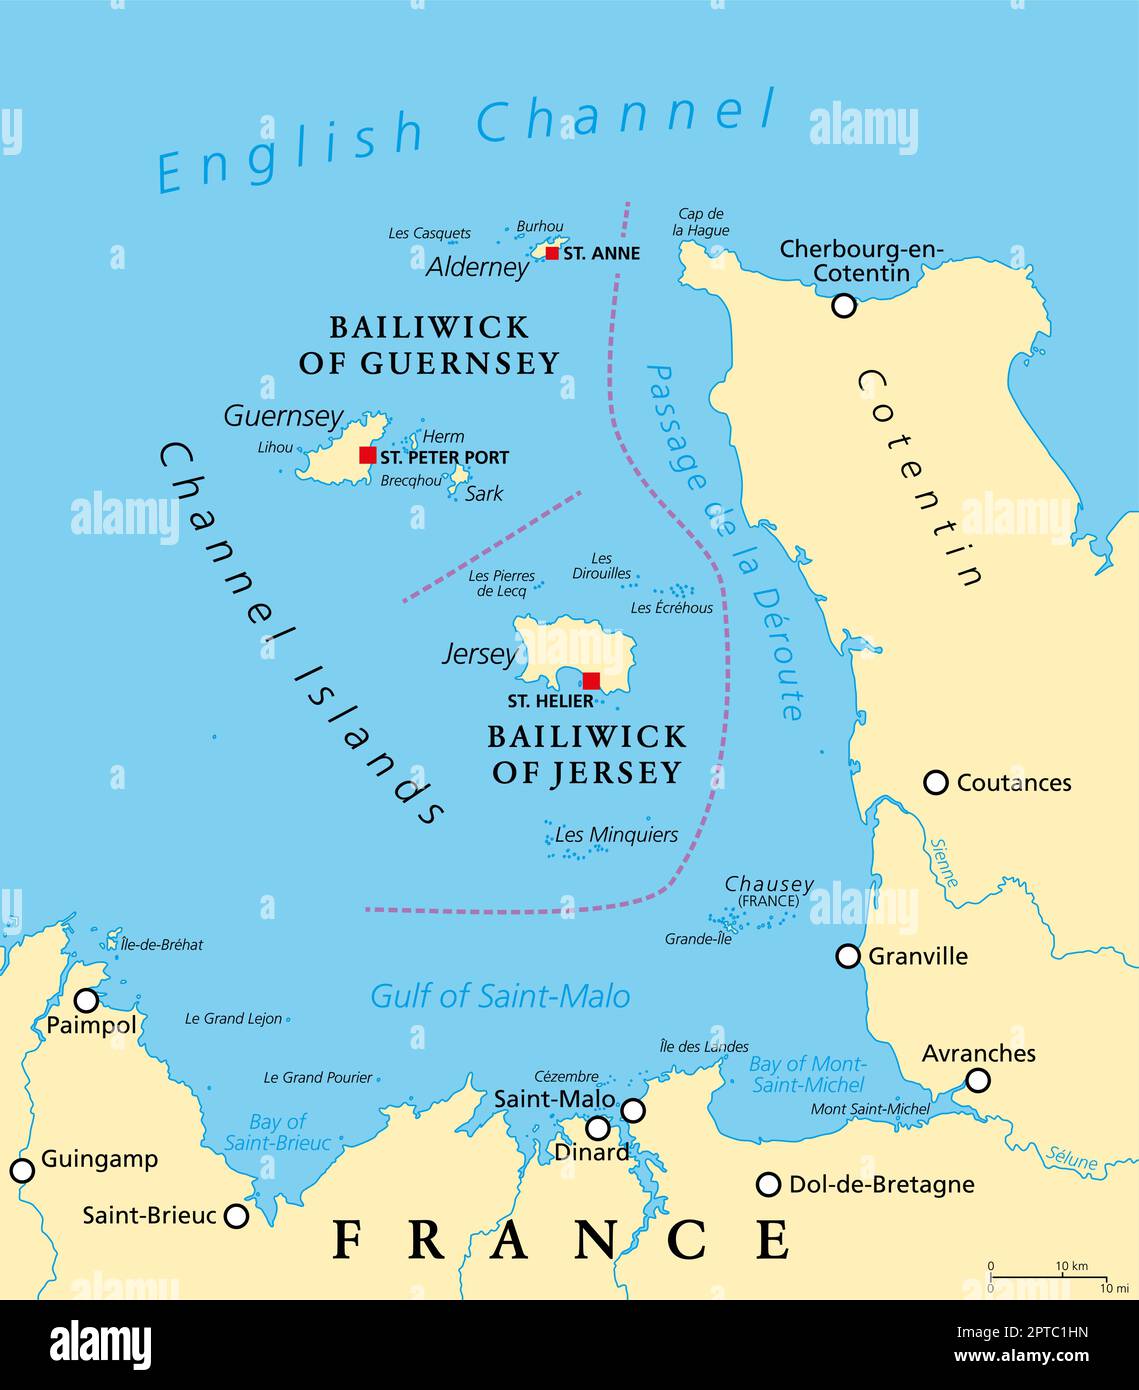 Kanalinseln, politische Karte, Kronenabhängigkeiten Guernsey und Jersey Stock Vektor